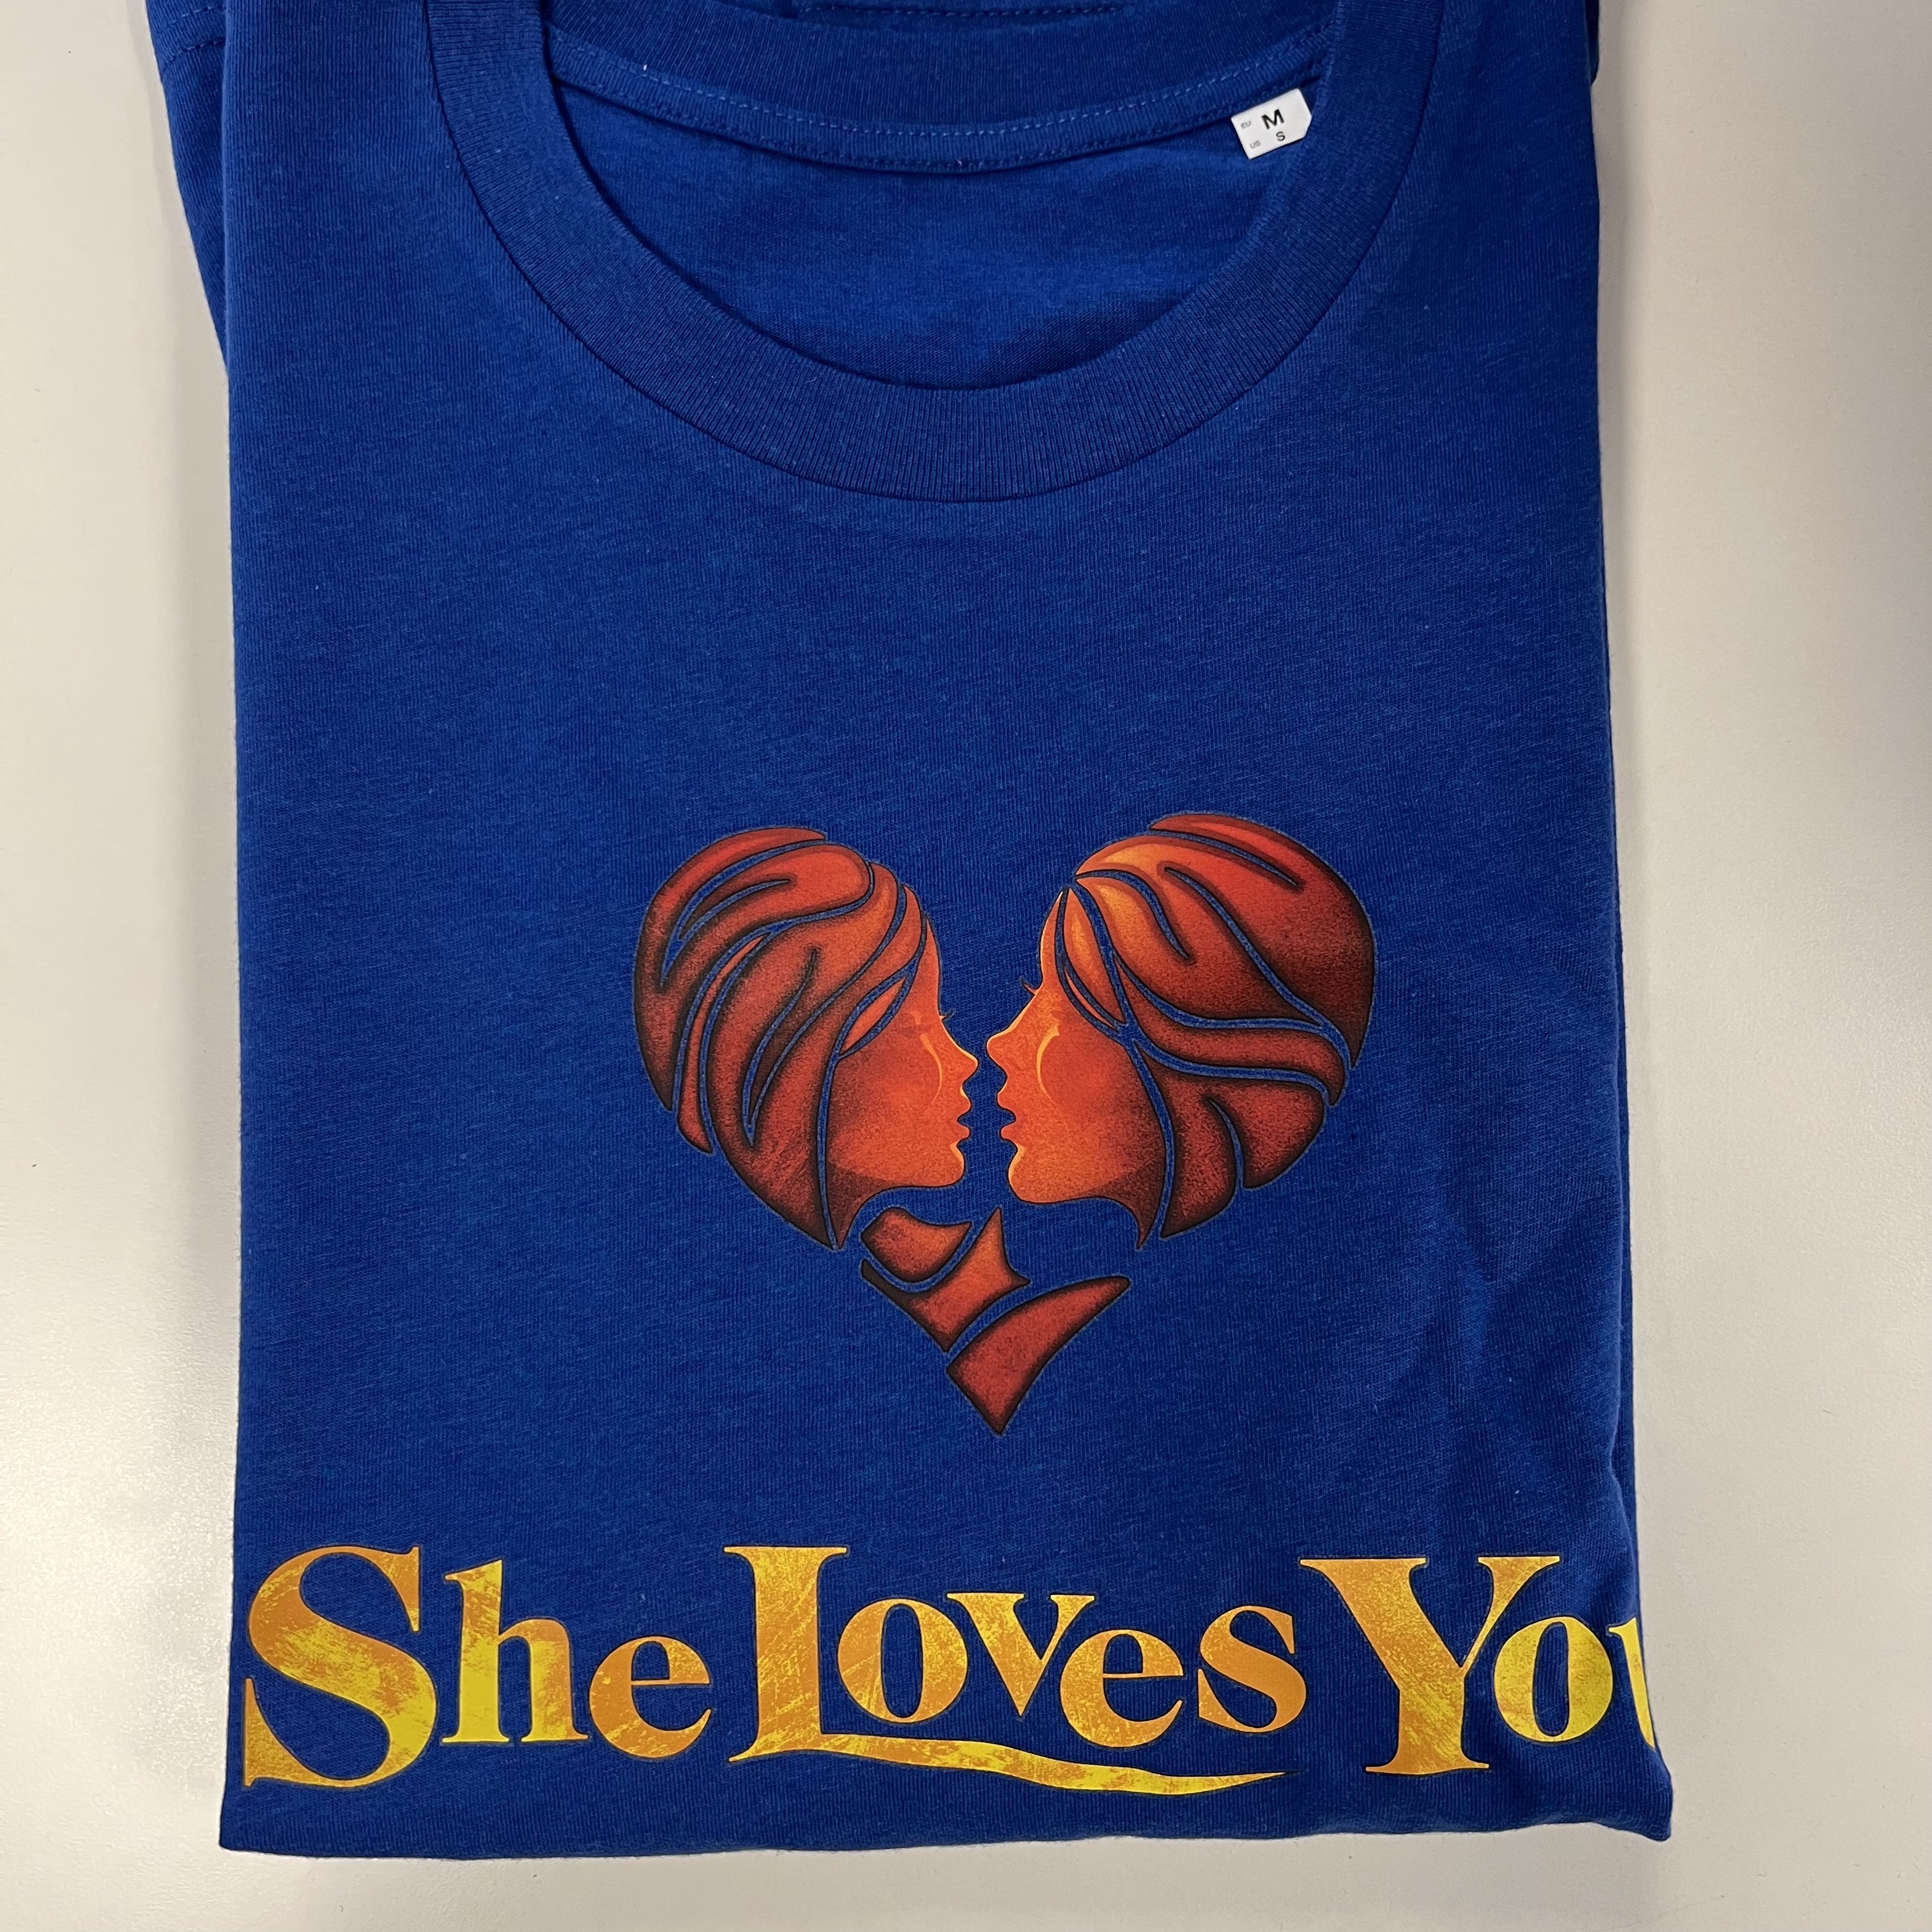 She Loves You T-shirt (Unisex)